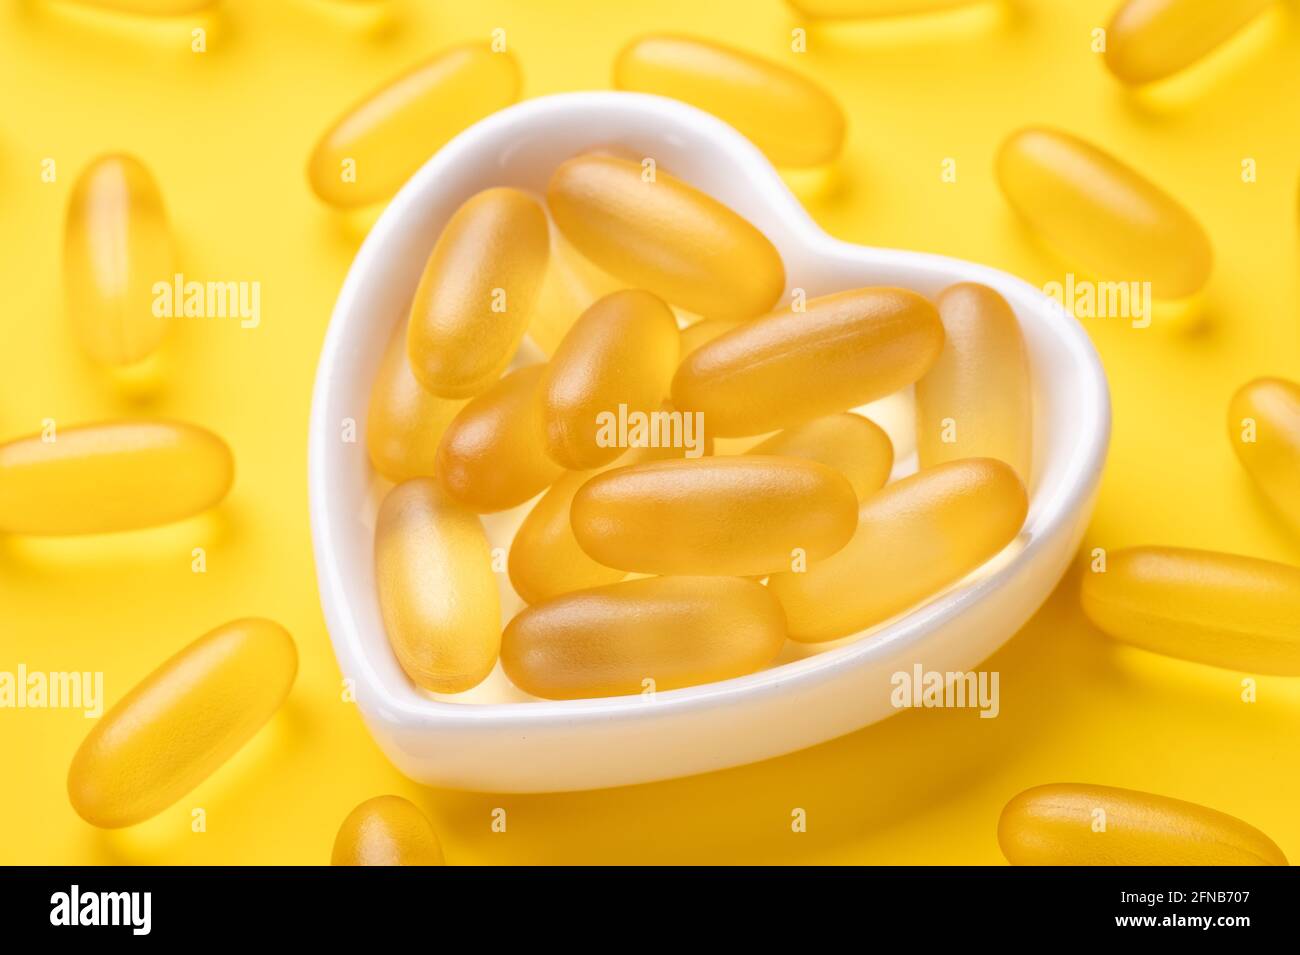 Fermez les capsules Omega 3 dans une plaque en forme de cœur sur fond jaune. Gels à base d'huile de poisson. Concept de soins de santé. Copier l'espace. Vue de dessus - image Banque D'Images